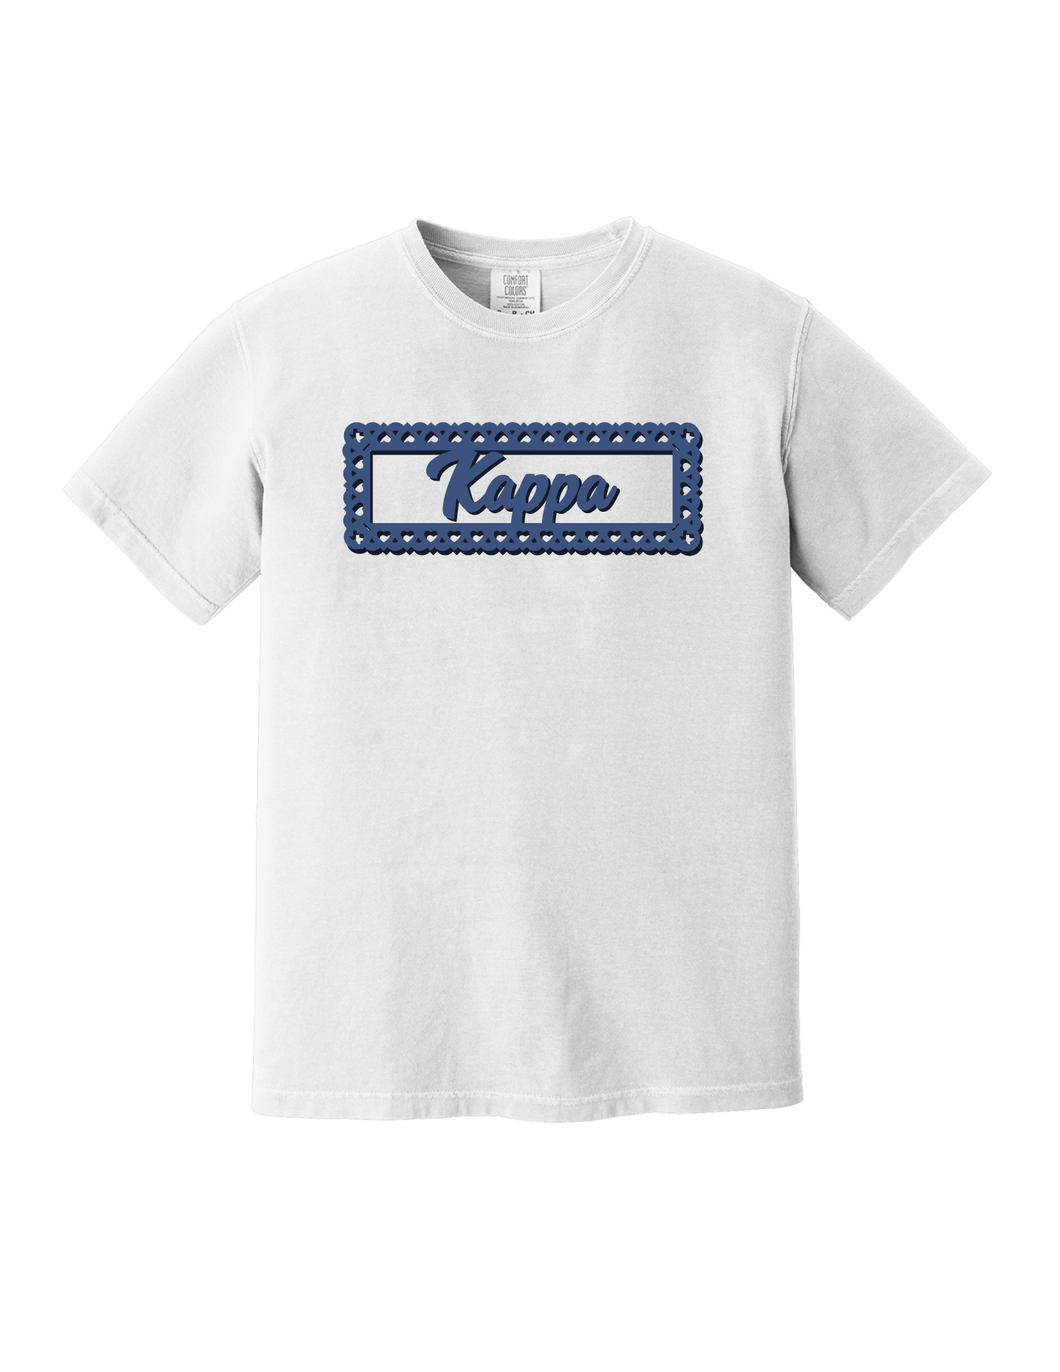 Cute Border Design- Kappa Kappa Gamma short sleeve Tee